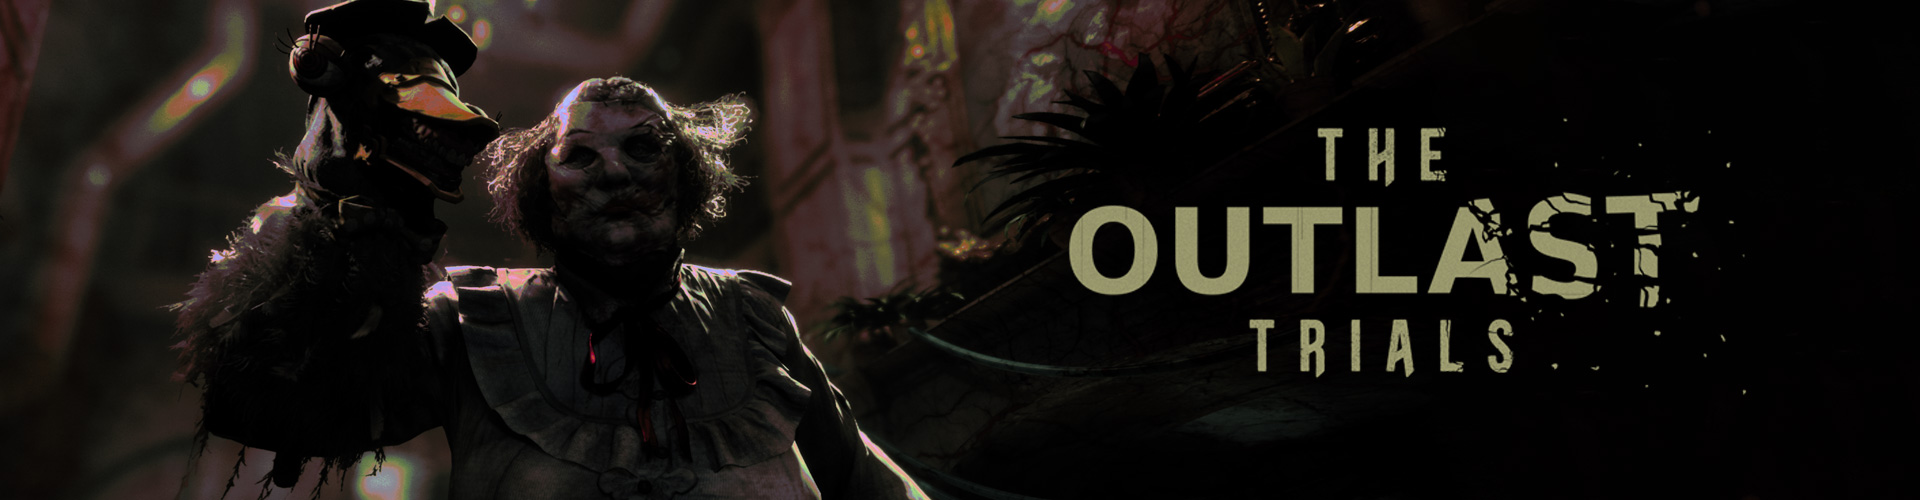 The Outlast Trials: een psychologisch horror game in co-op